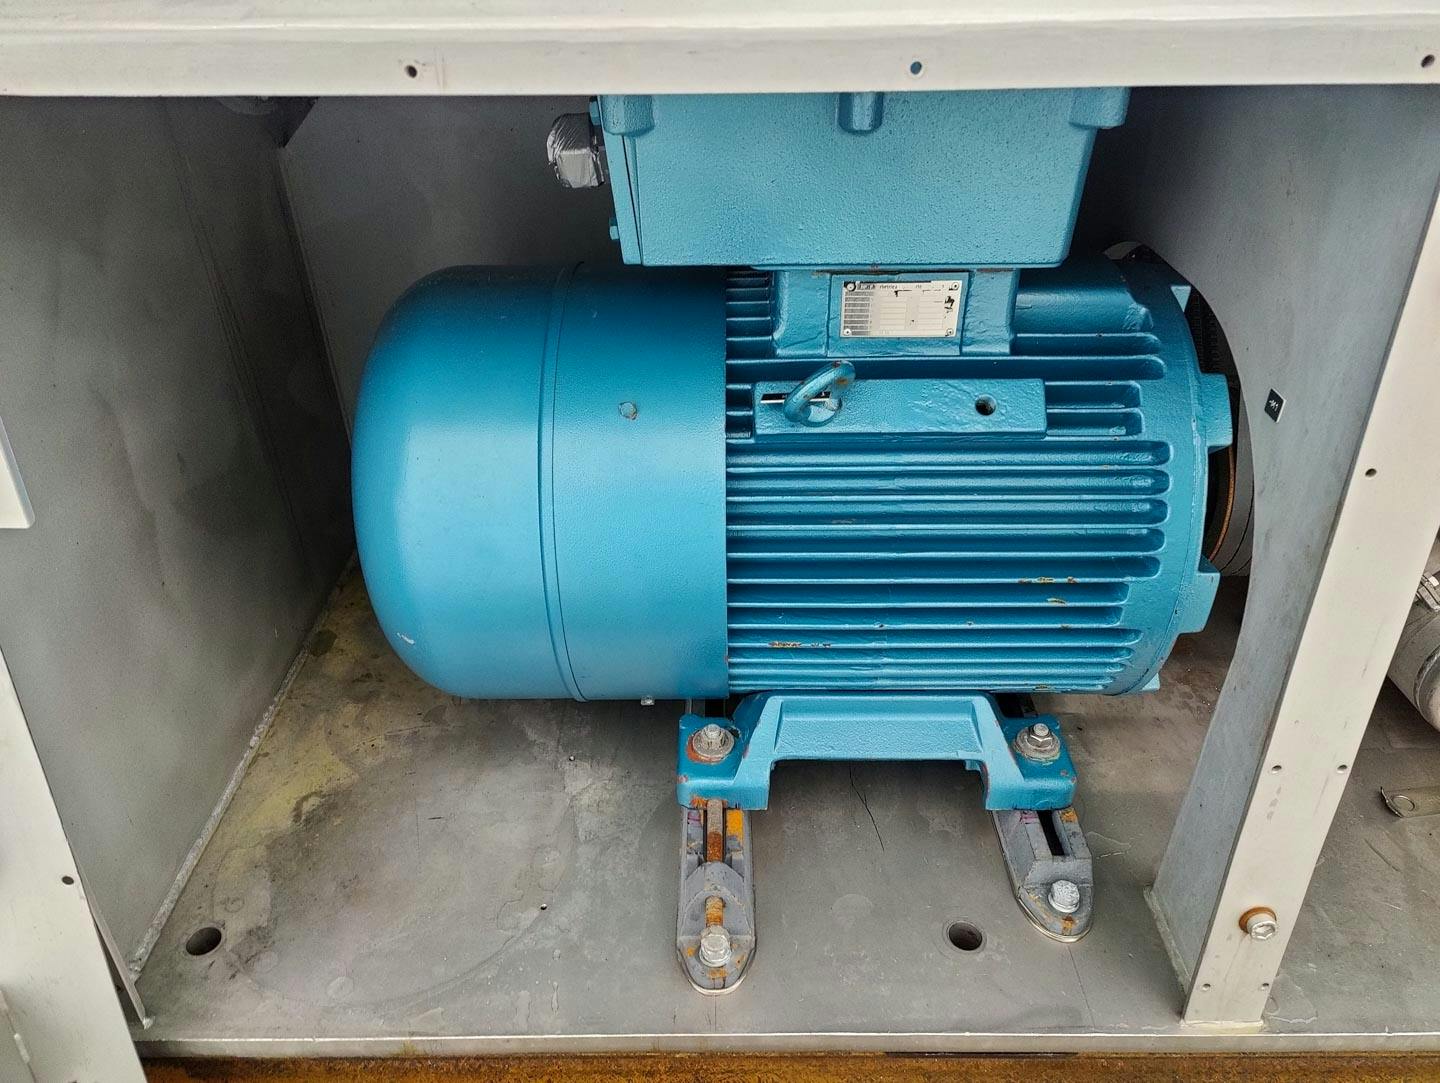 Fima Process Trockner TZT-1300 - centrifuge dryer - Košová odstredivka - image 12